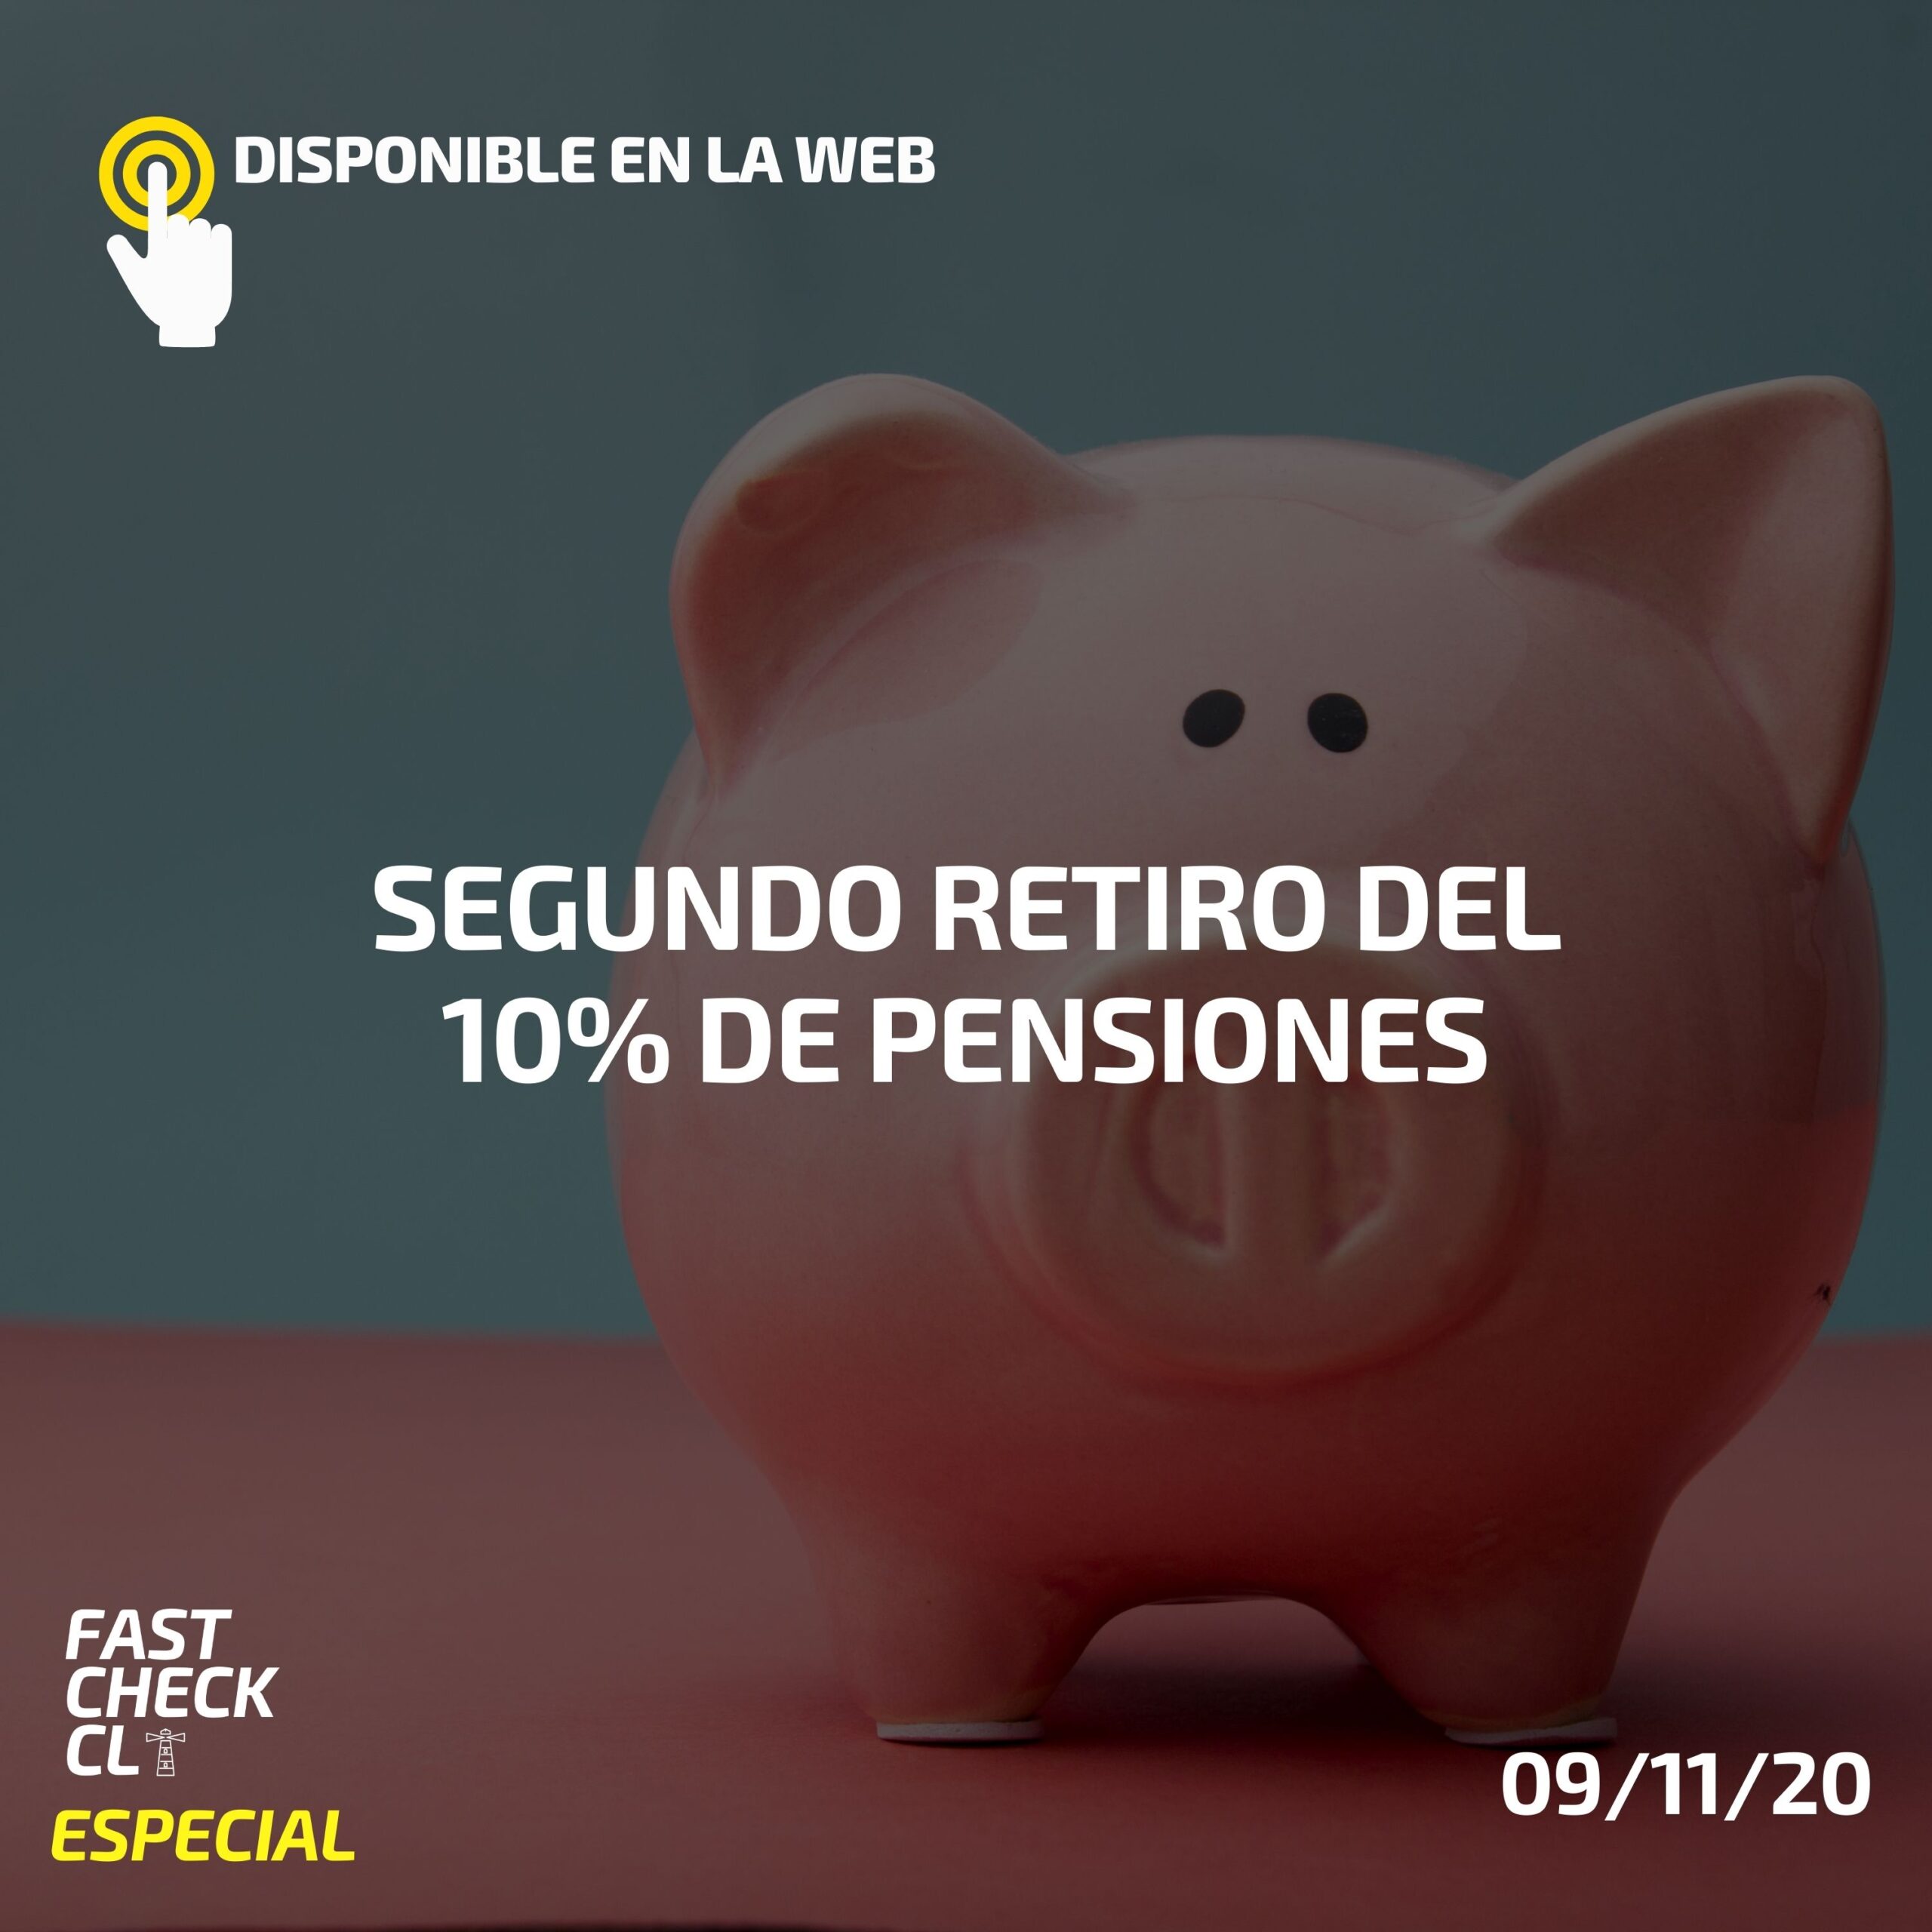 You are currently viewing Segundo retiro del 10% de pensiones